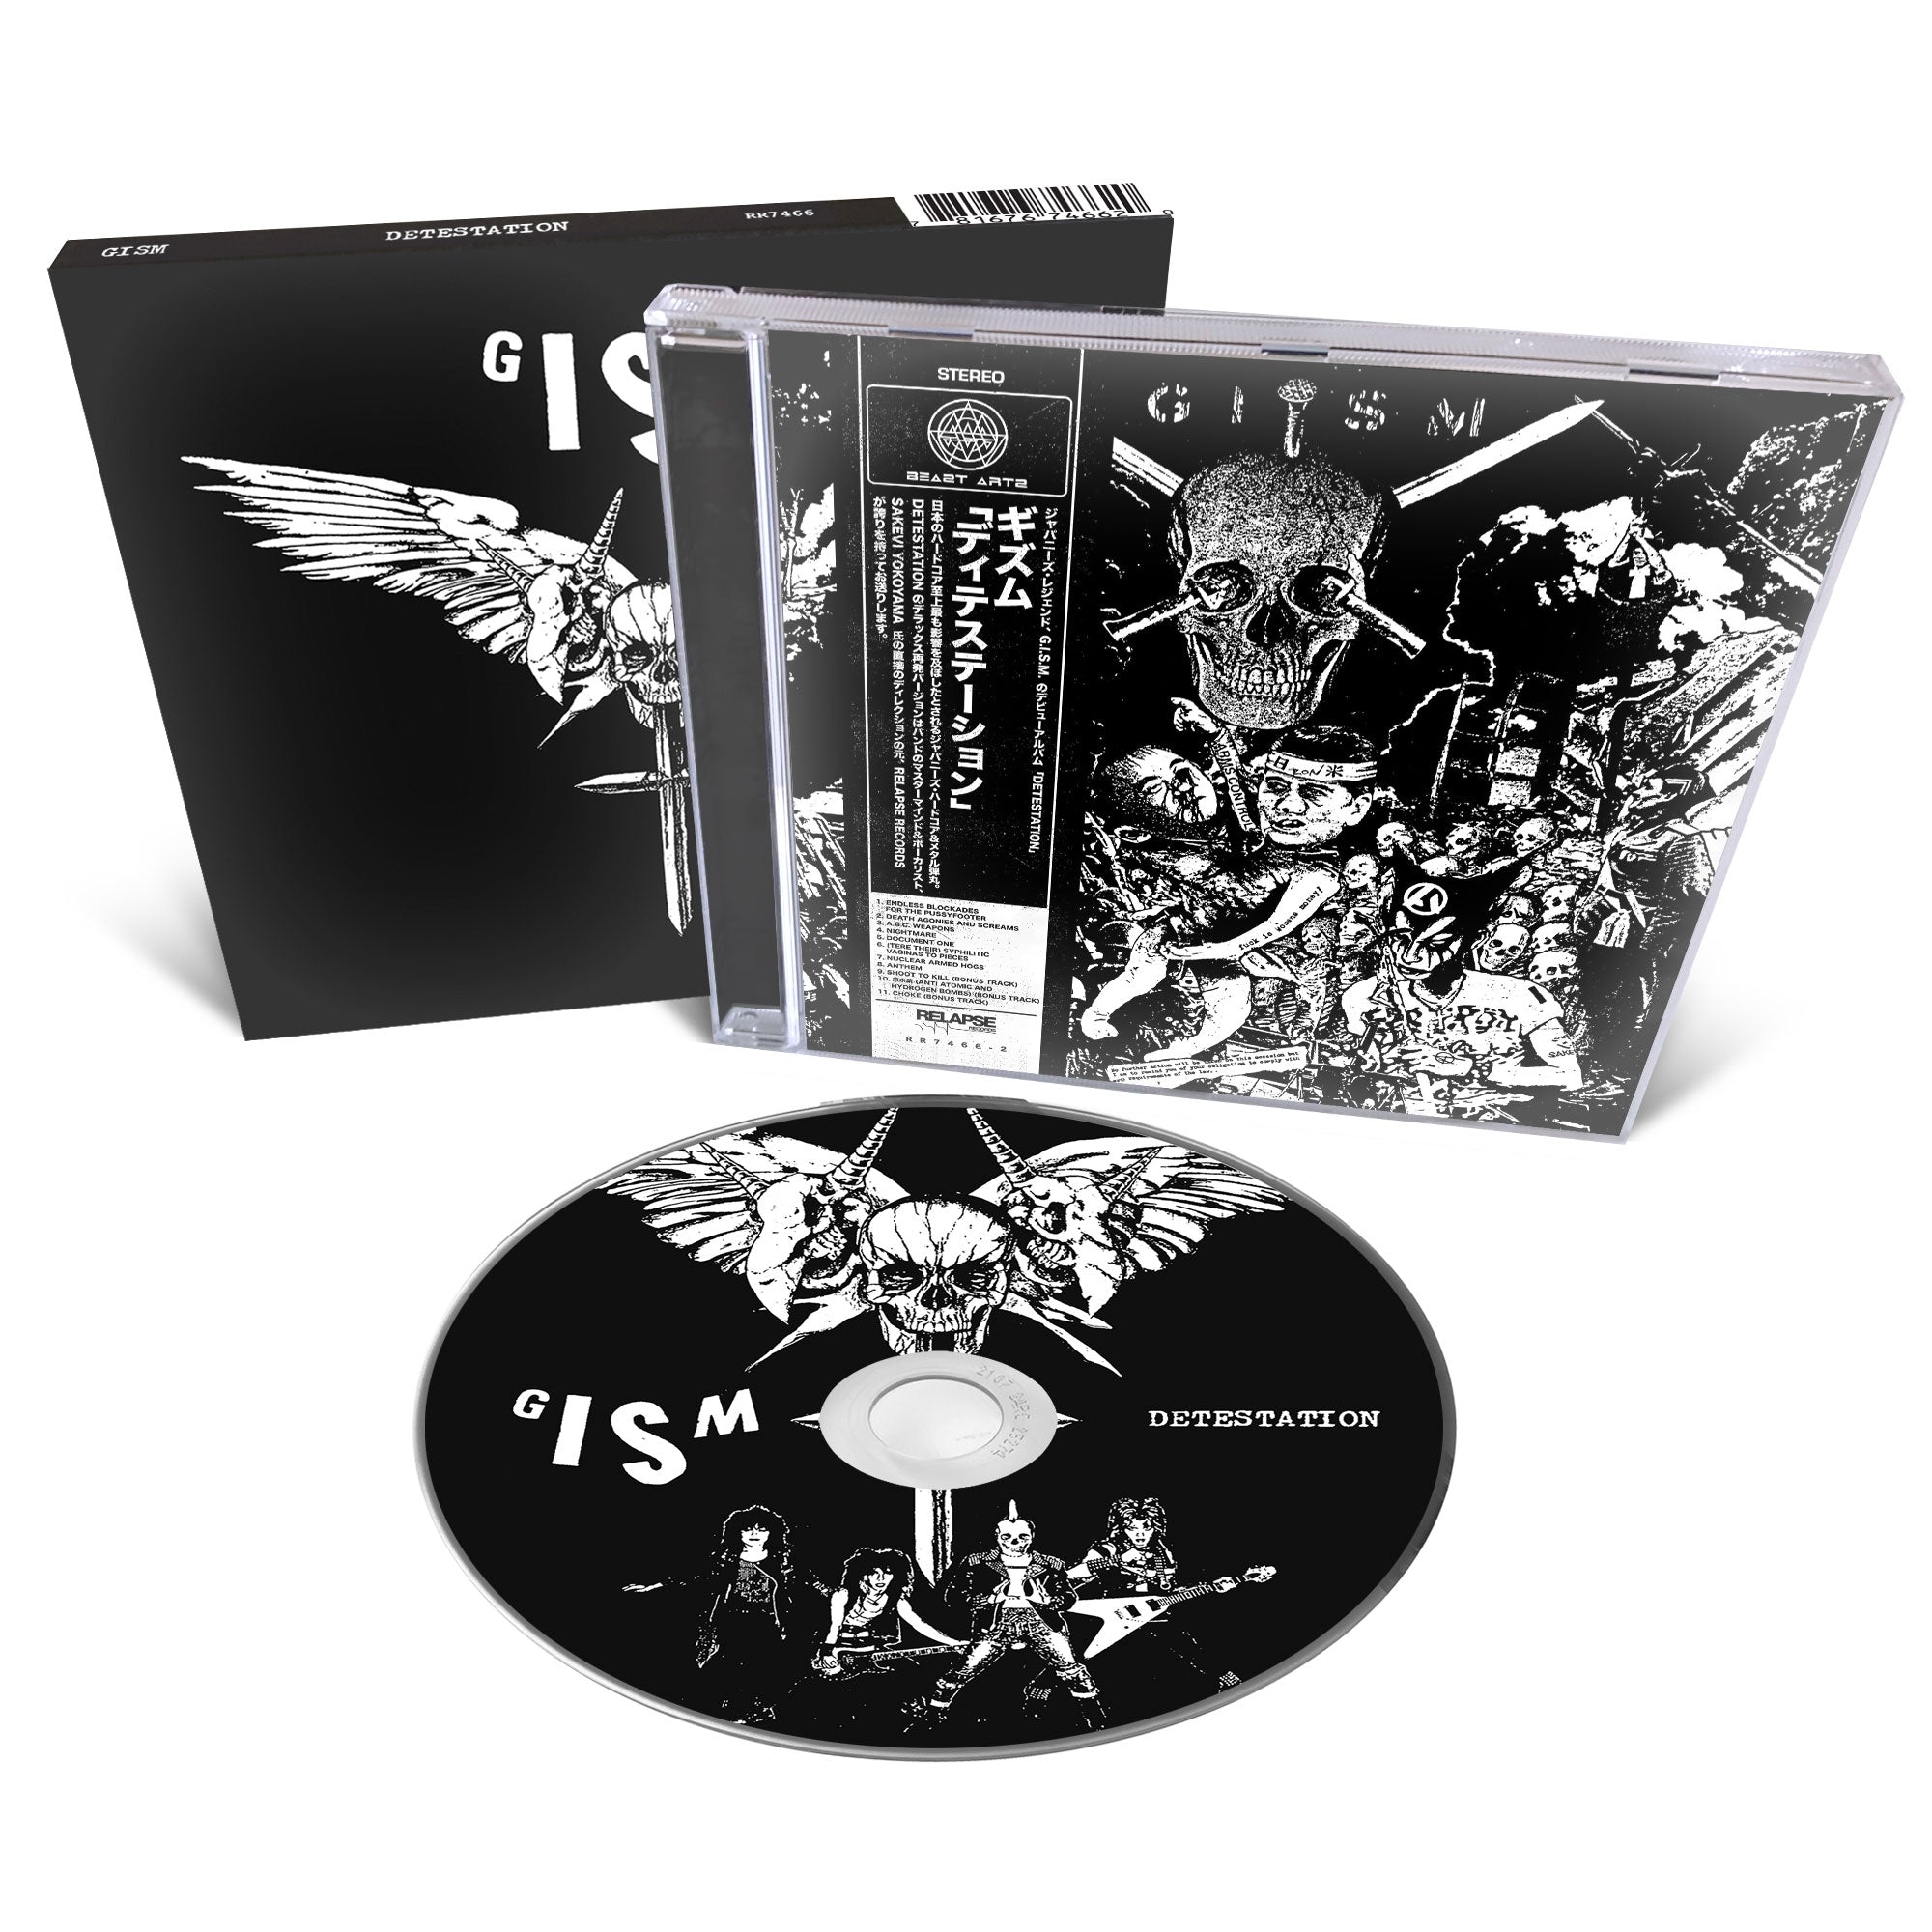 GISM "Detestation (Reissue)" CD